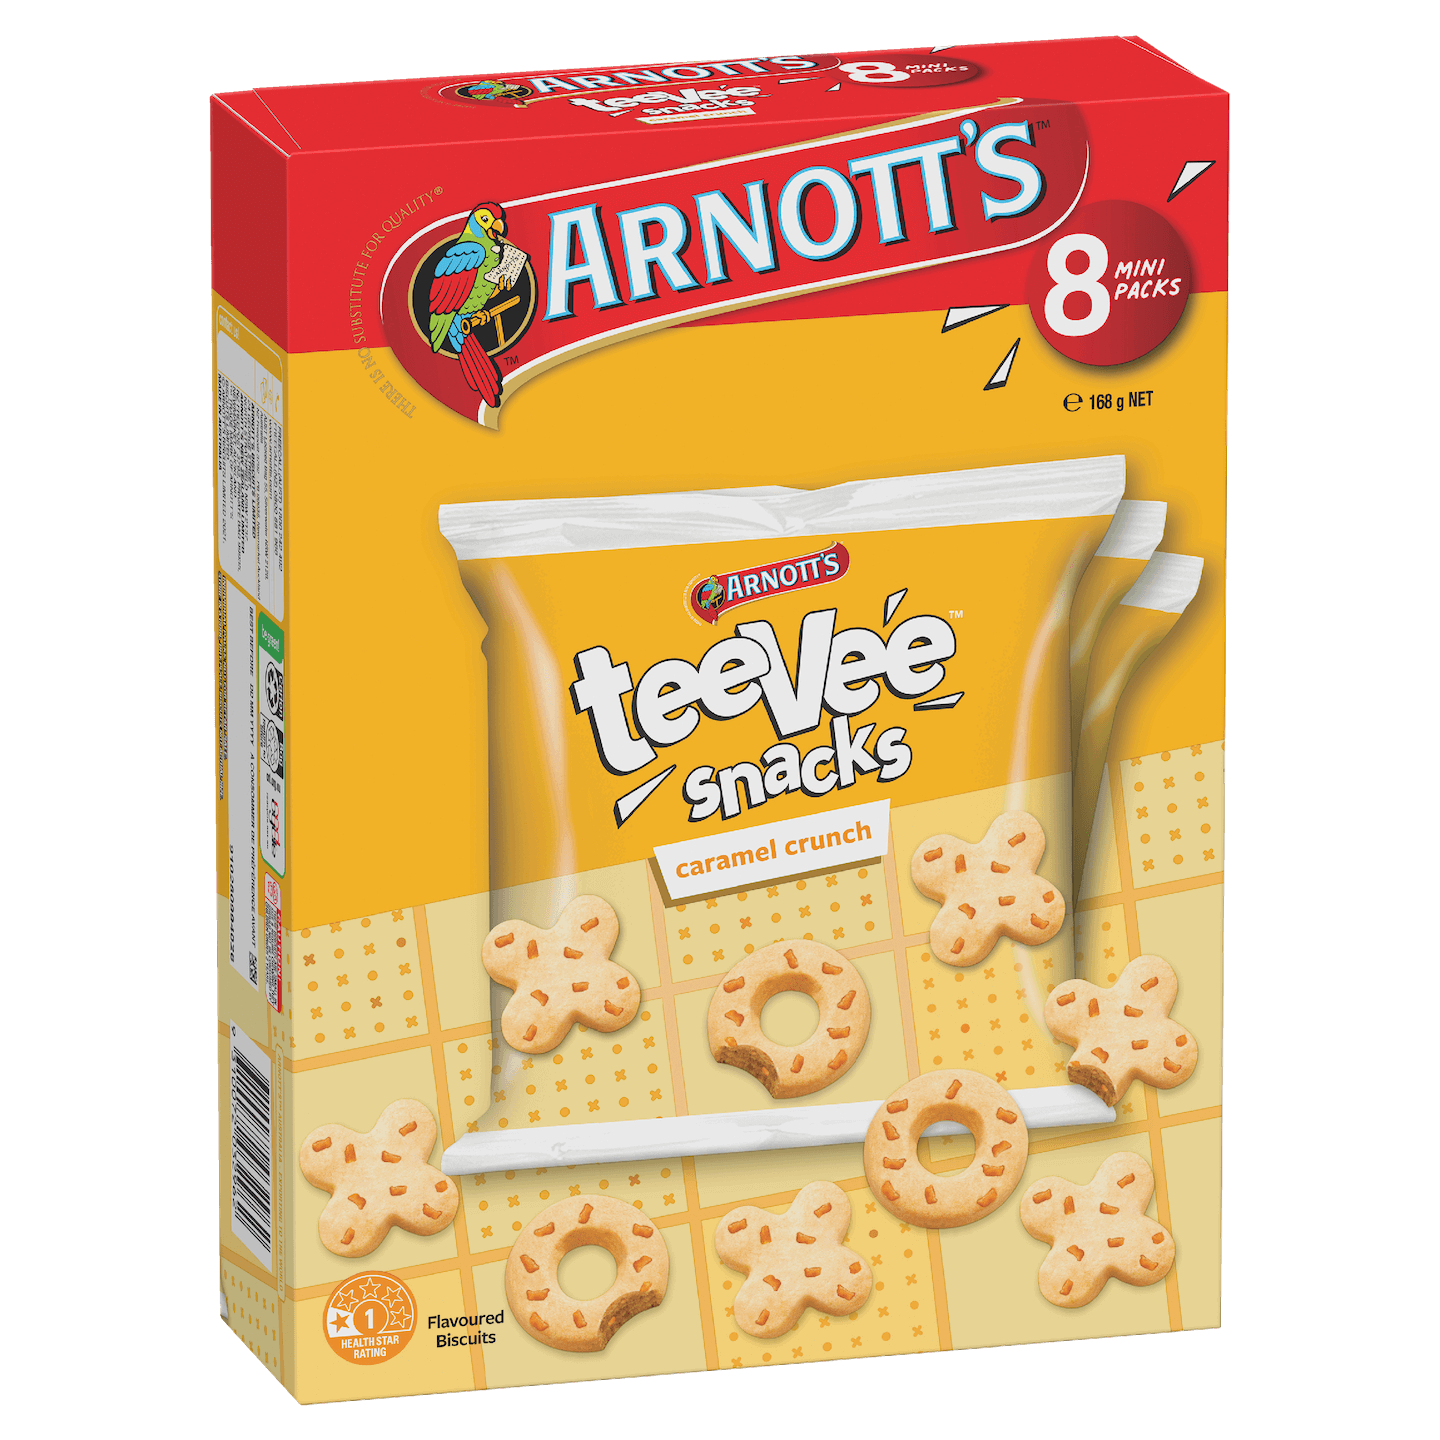 Pack shot of Arnott's teeVee Snacks Caramel Crunch